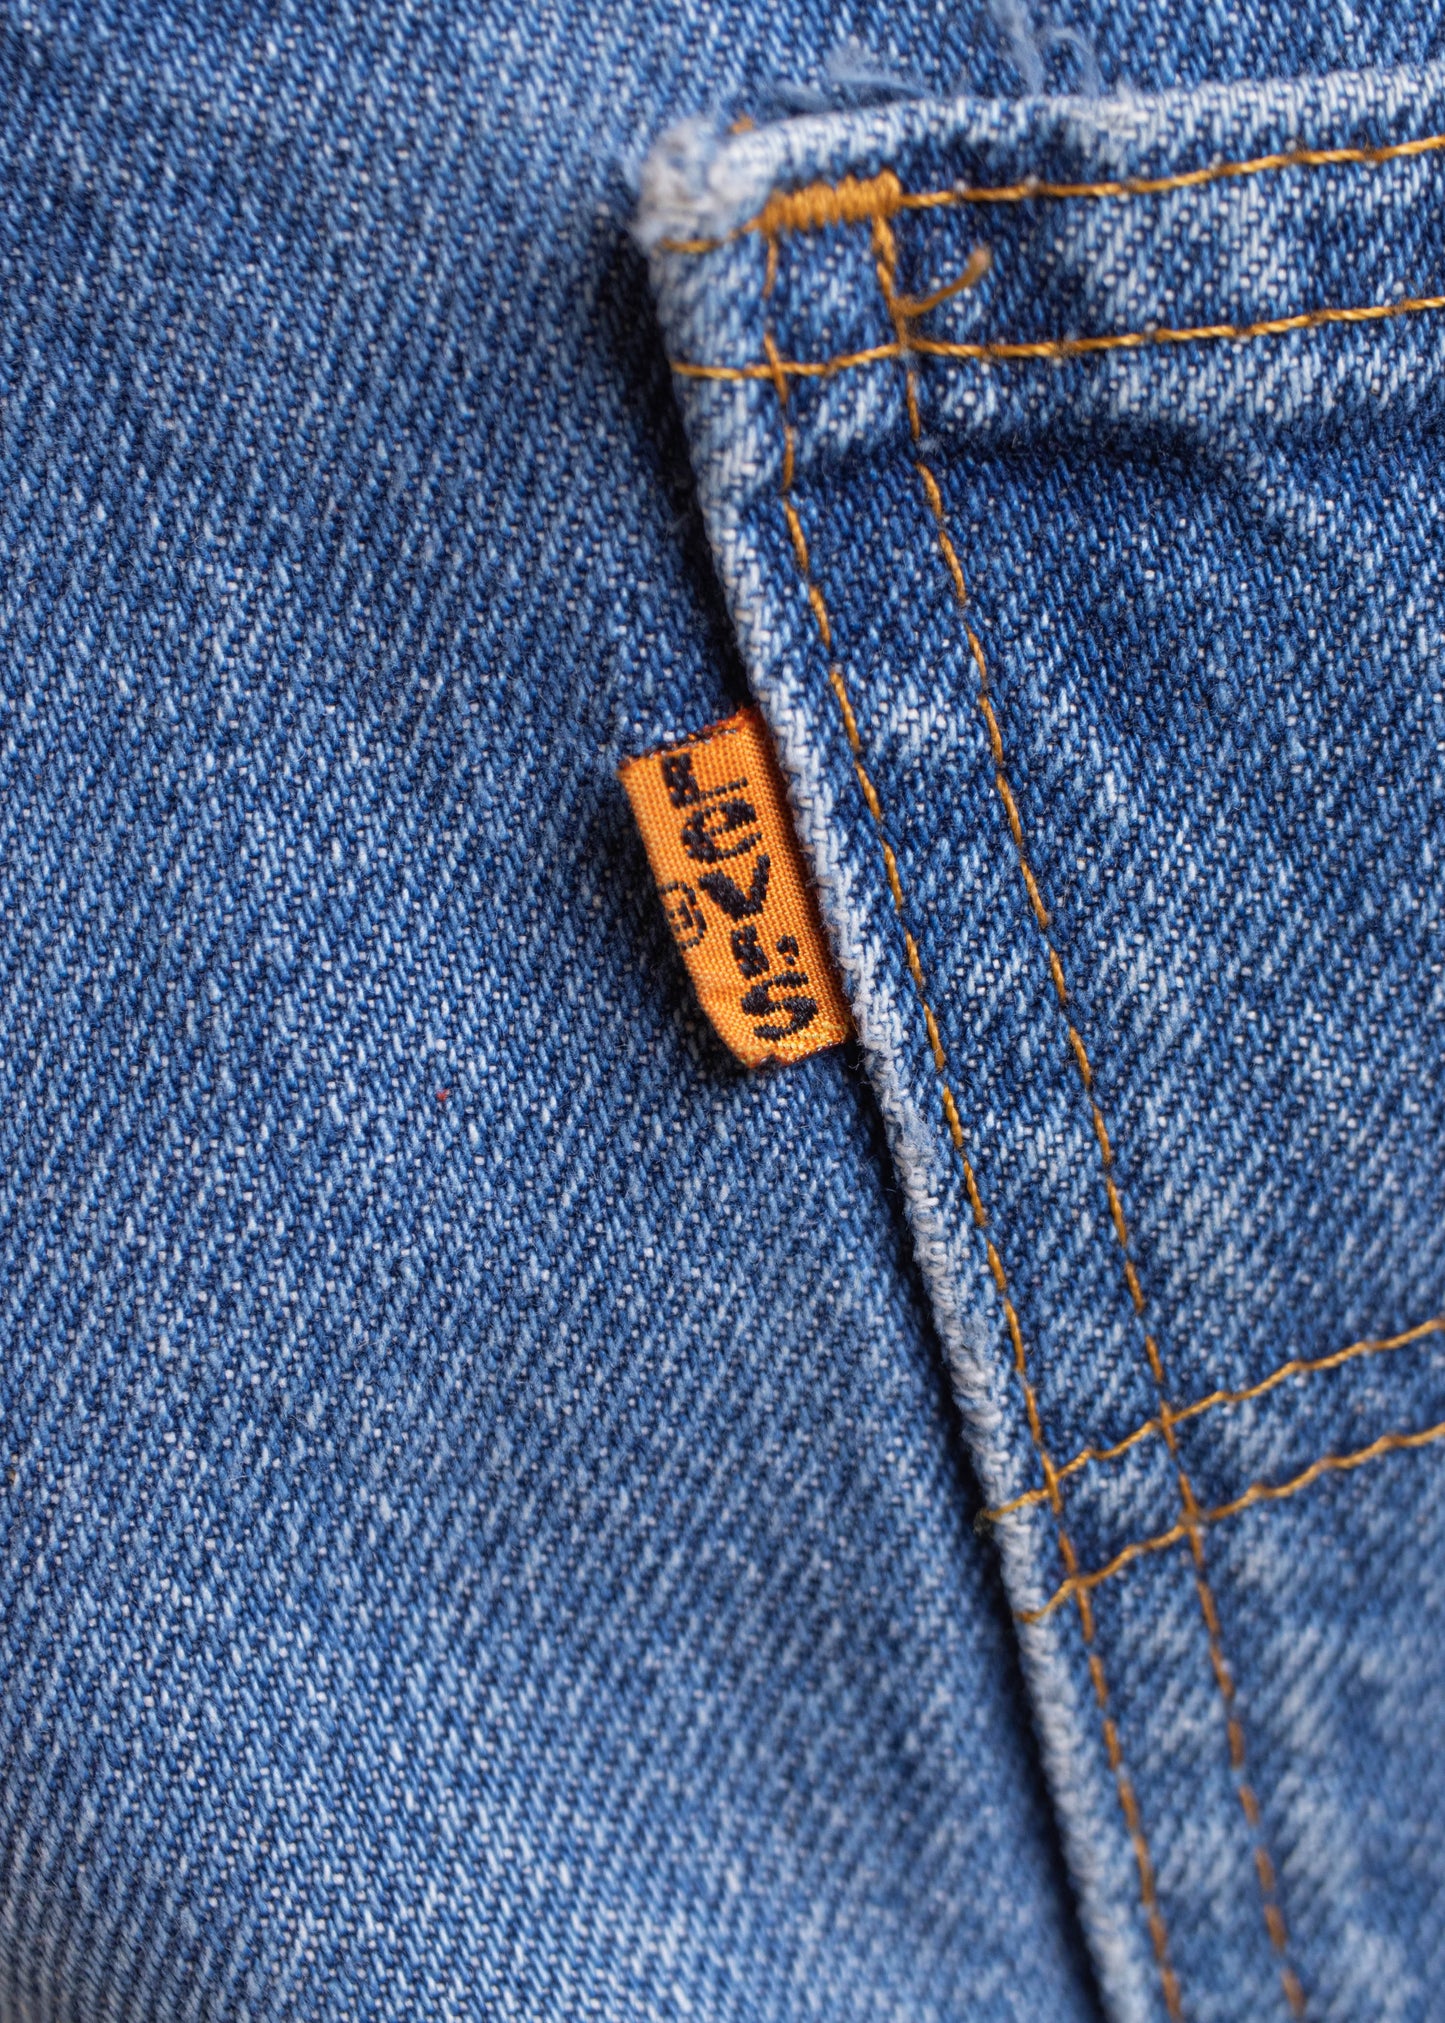 1970s Levi's Orange Tab Midwash Flare Jeans Size Women's 31 Men's 33